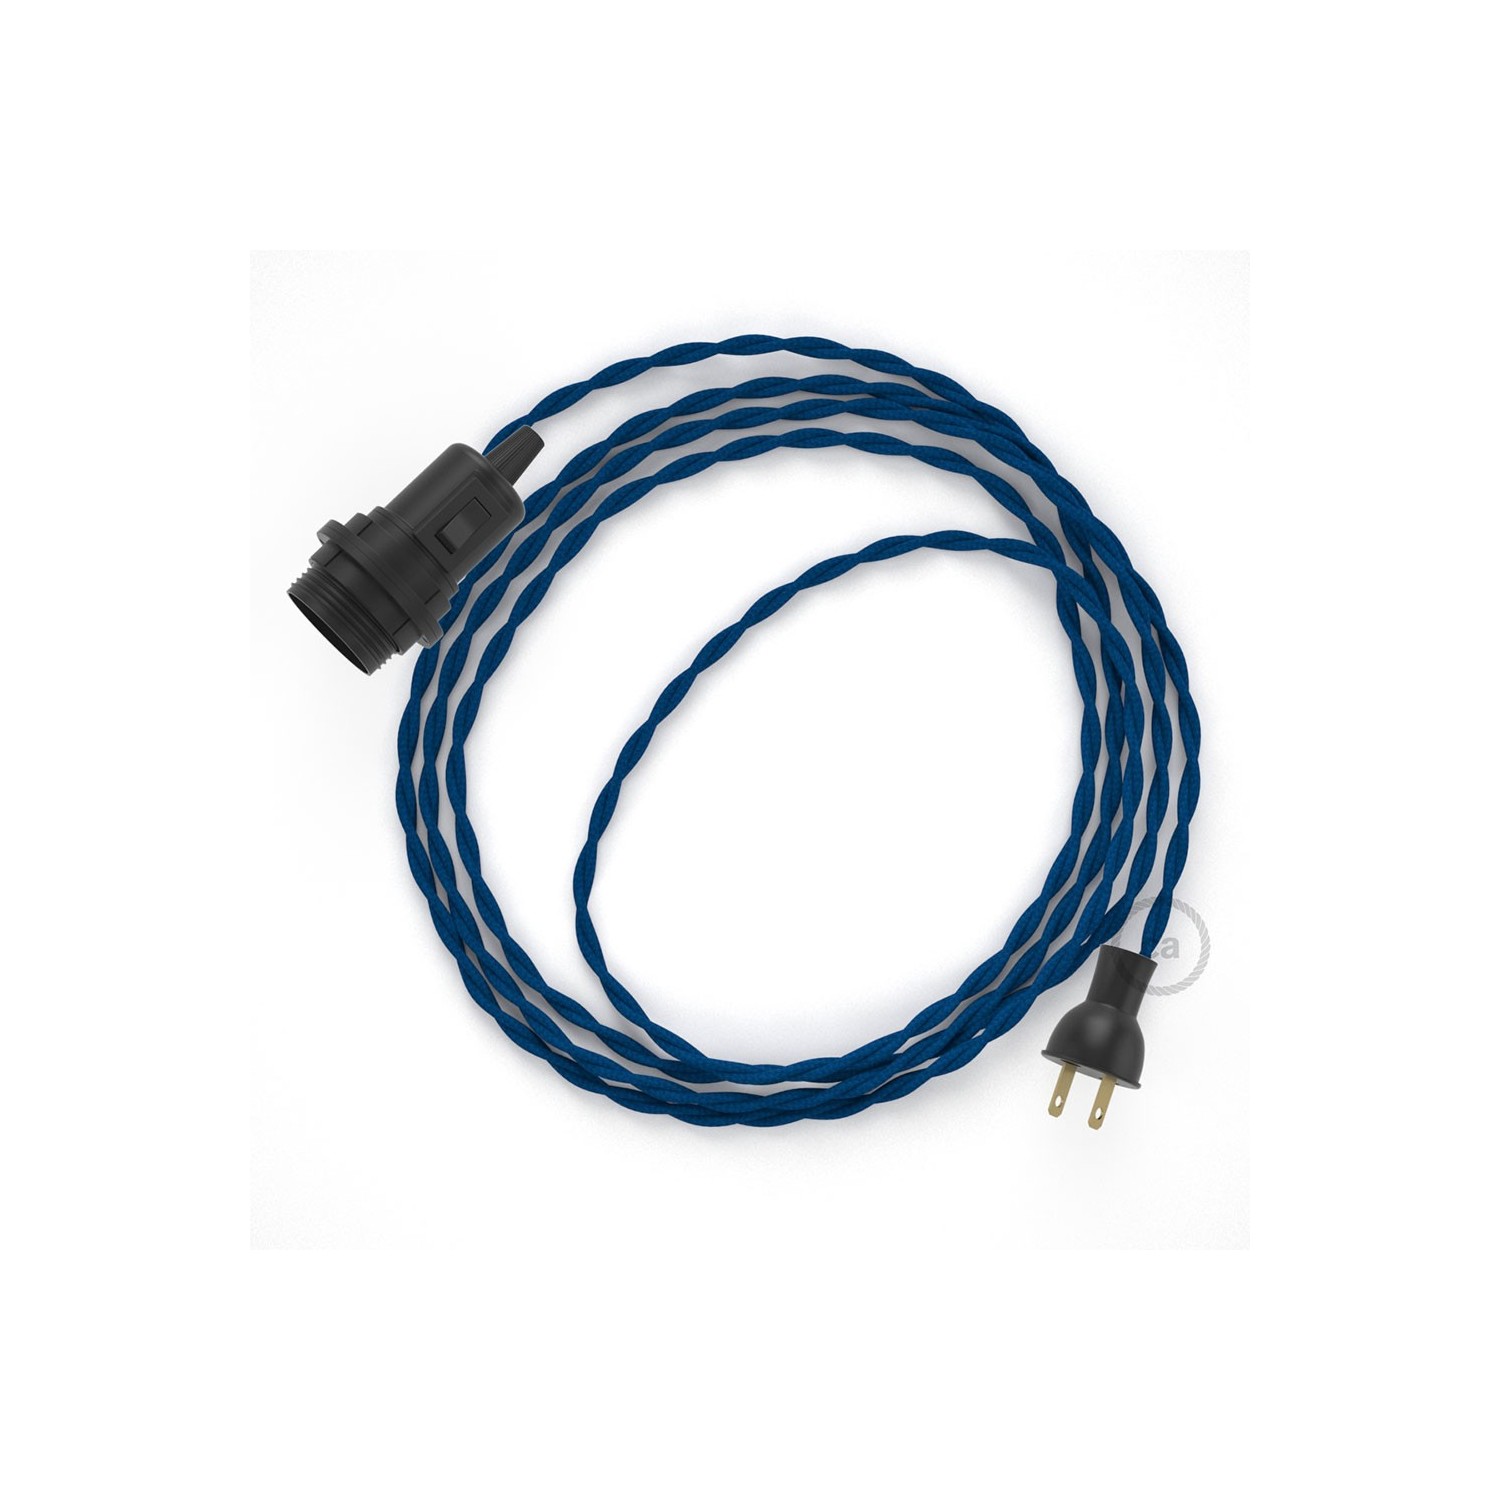 Crea tu Snake para pantalla con cable de Rayón Azul TM12, socket y enchufe, y trae la luz donde tu quieras.